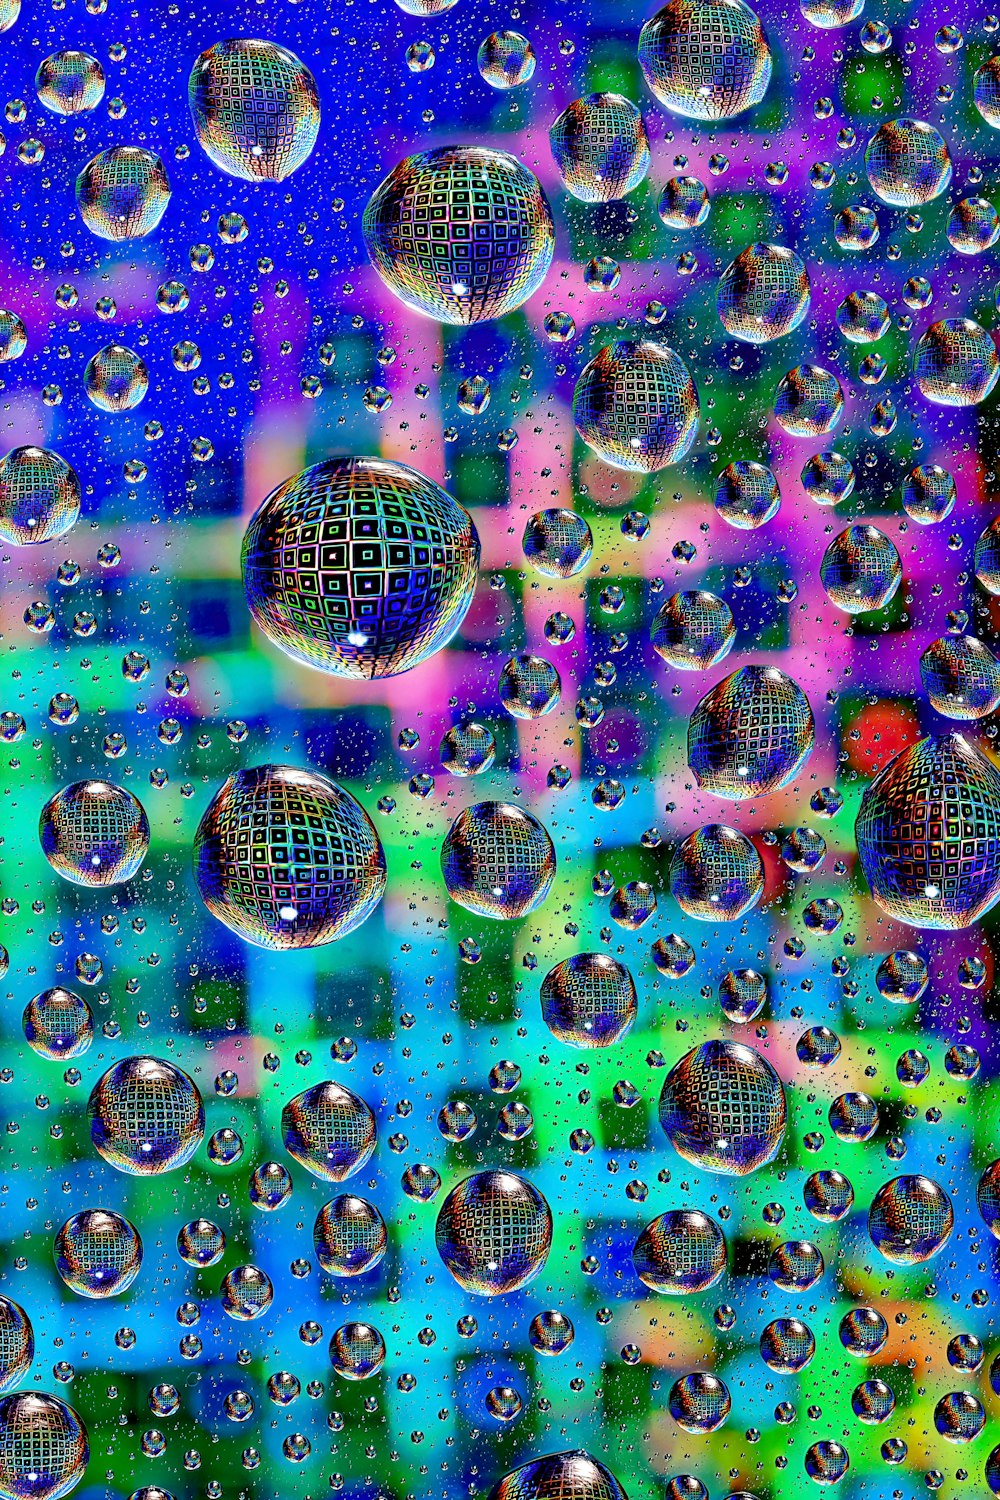 un groupe de bulles flottant au-dessus d’une surface bleue et verte